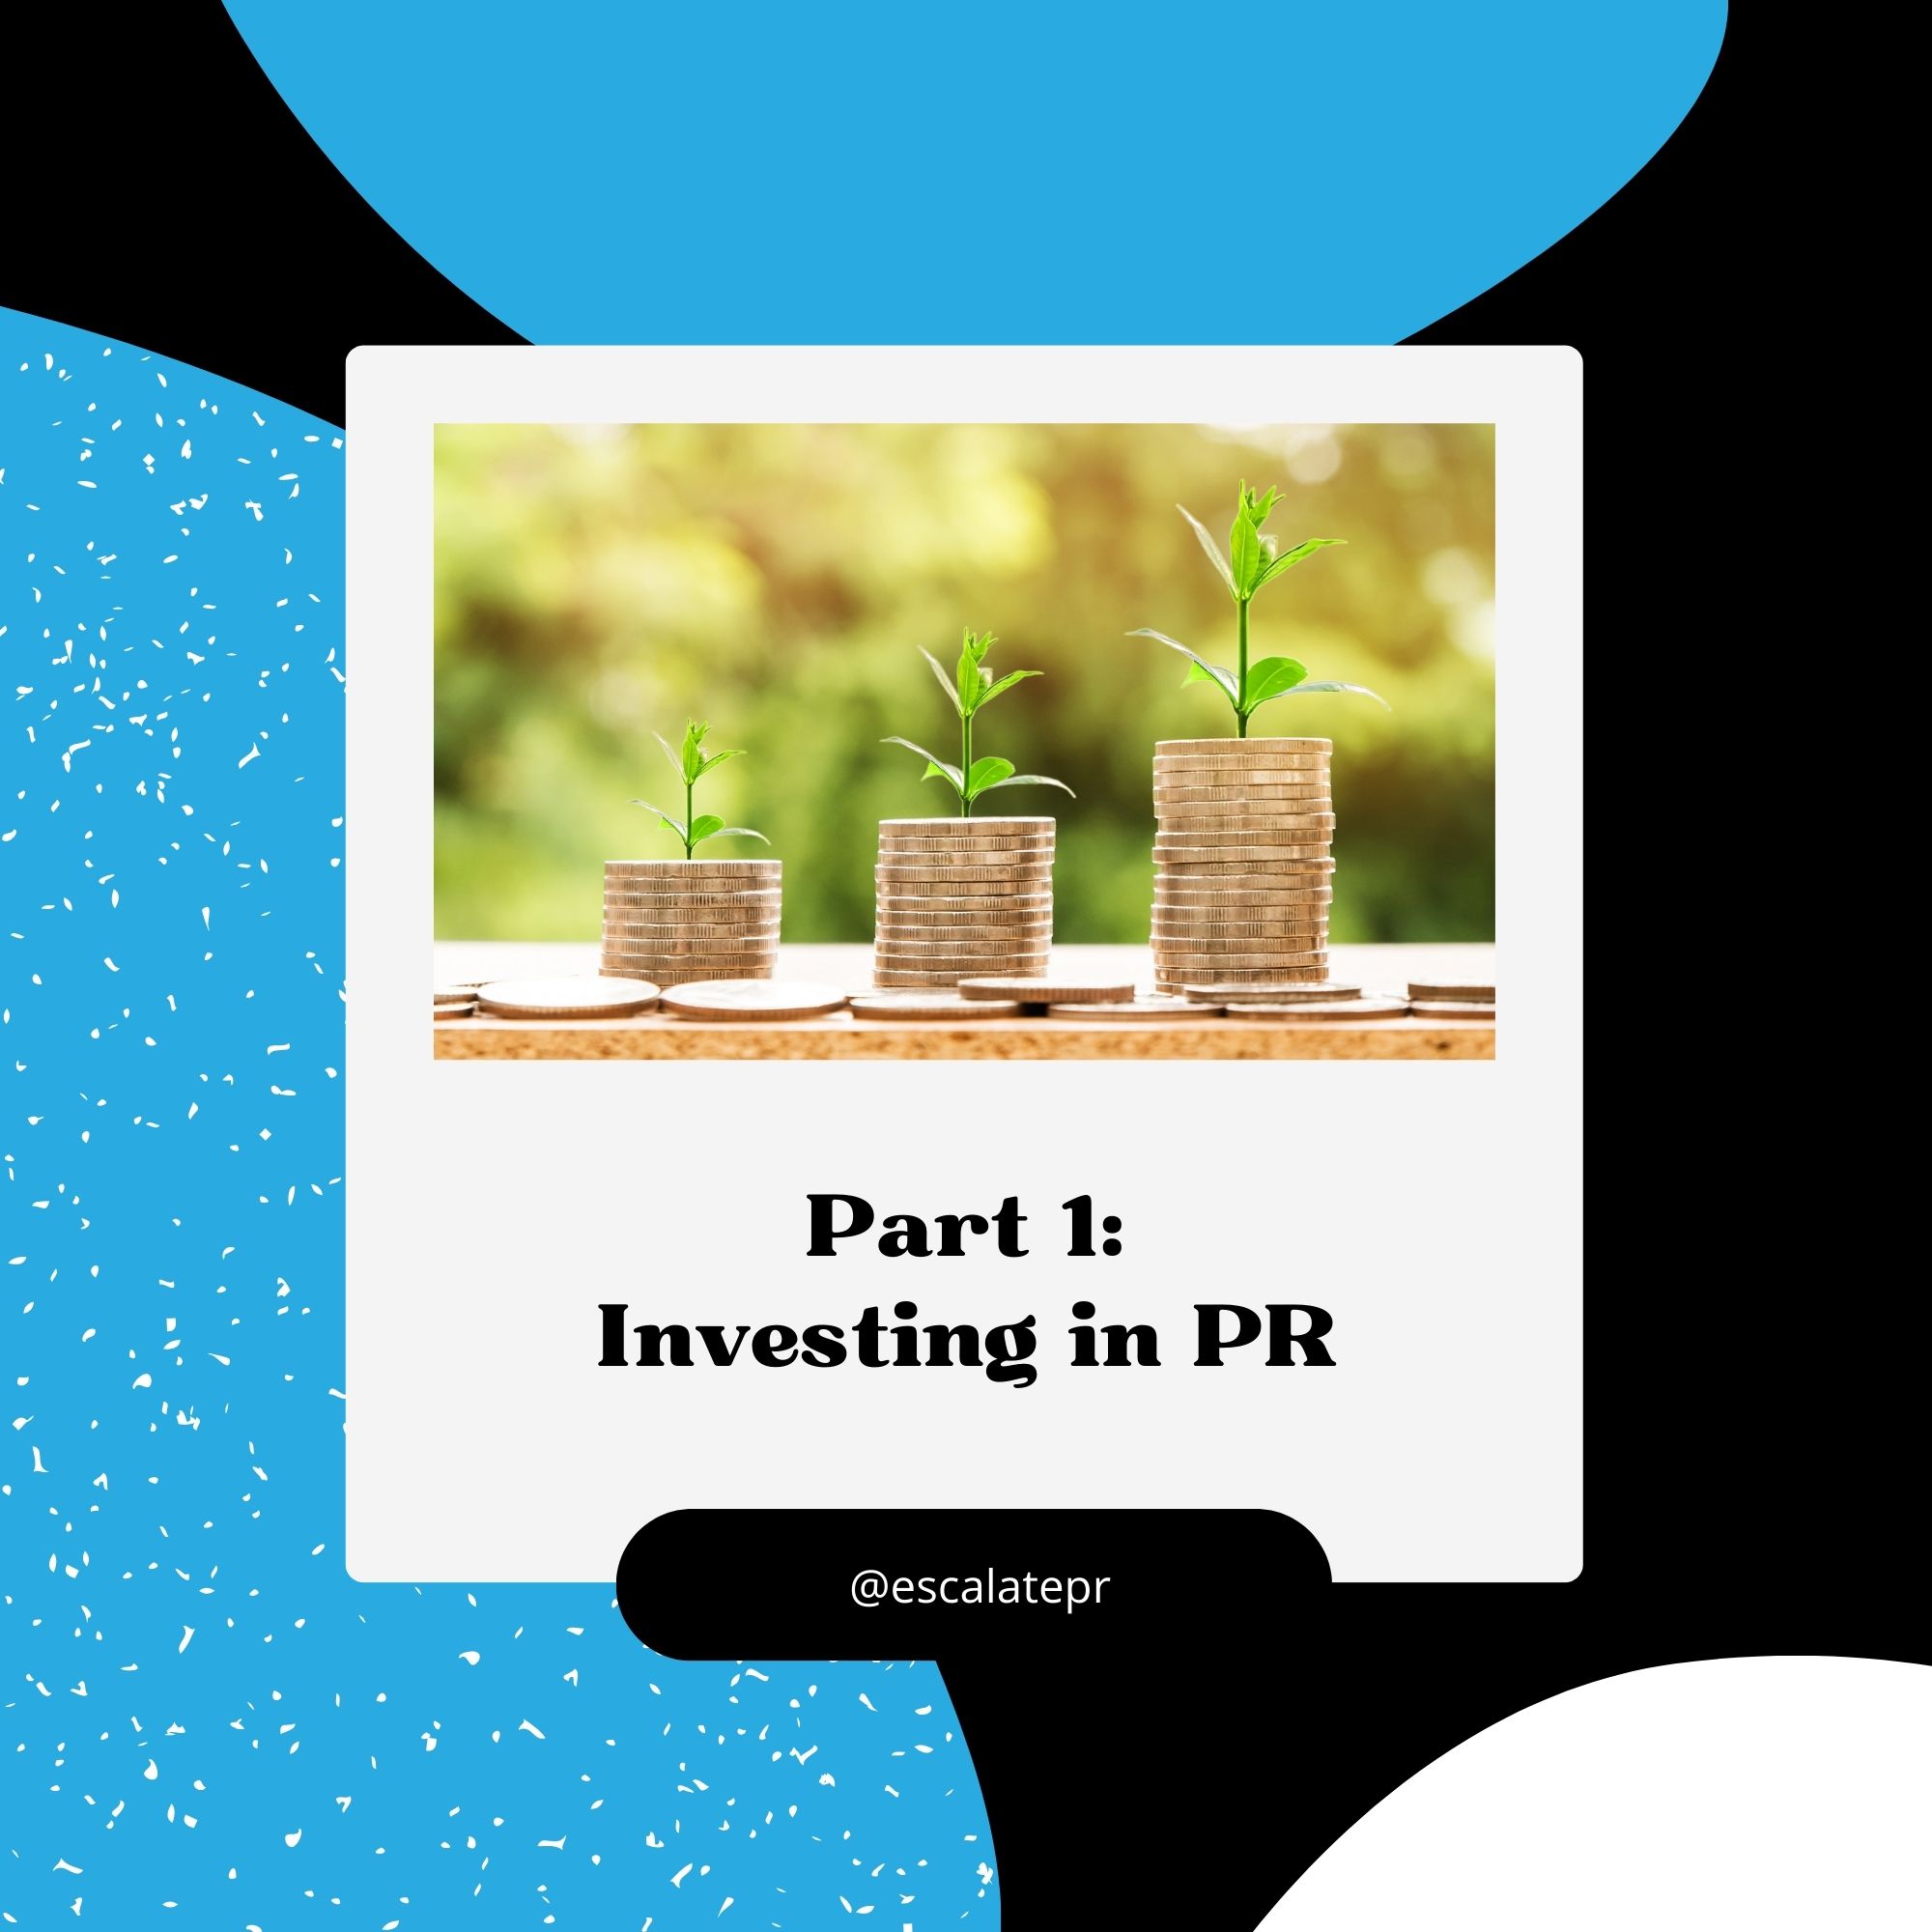 Investing in PR